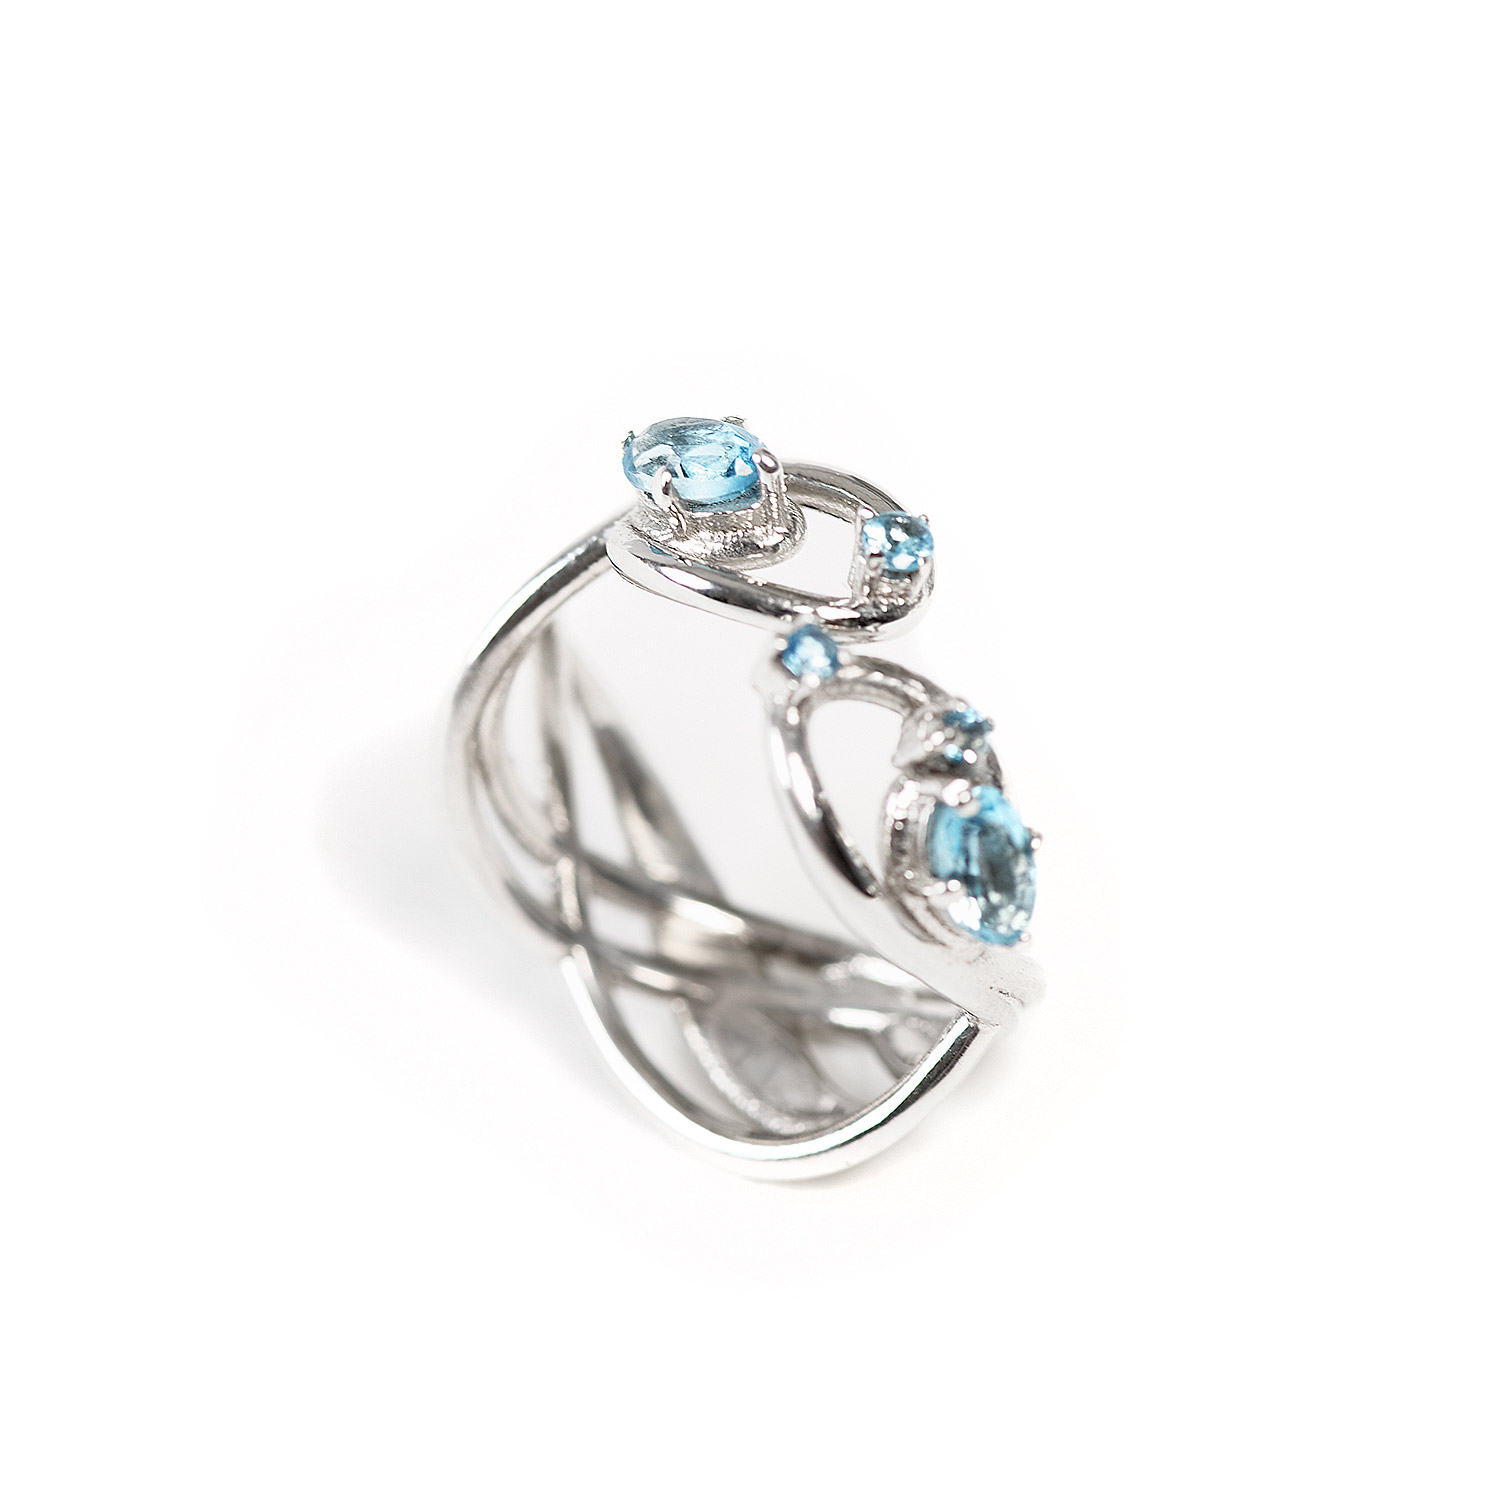 Flores gioielli Infinity ring Anello infinito in argento 925 simbolo infinito 